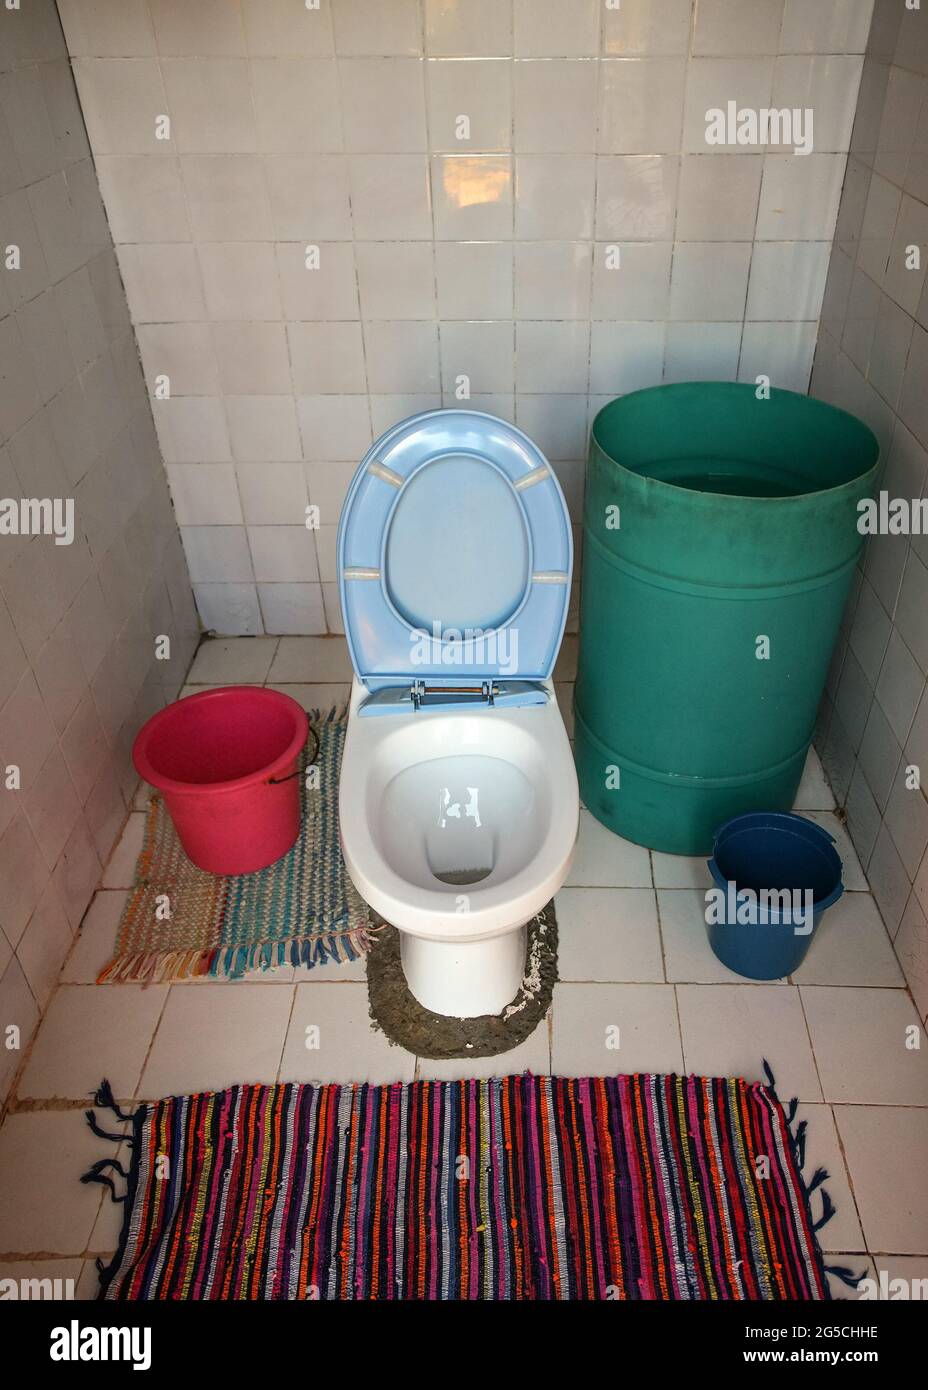 toilettes provisoires en porcelaine sans mécanisme de rinçage installé dans la pièce sans tuyaux ni plomberie, baril vert avec eau à proximité Banque D'Images